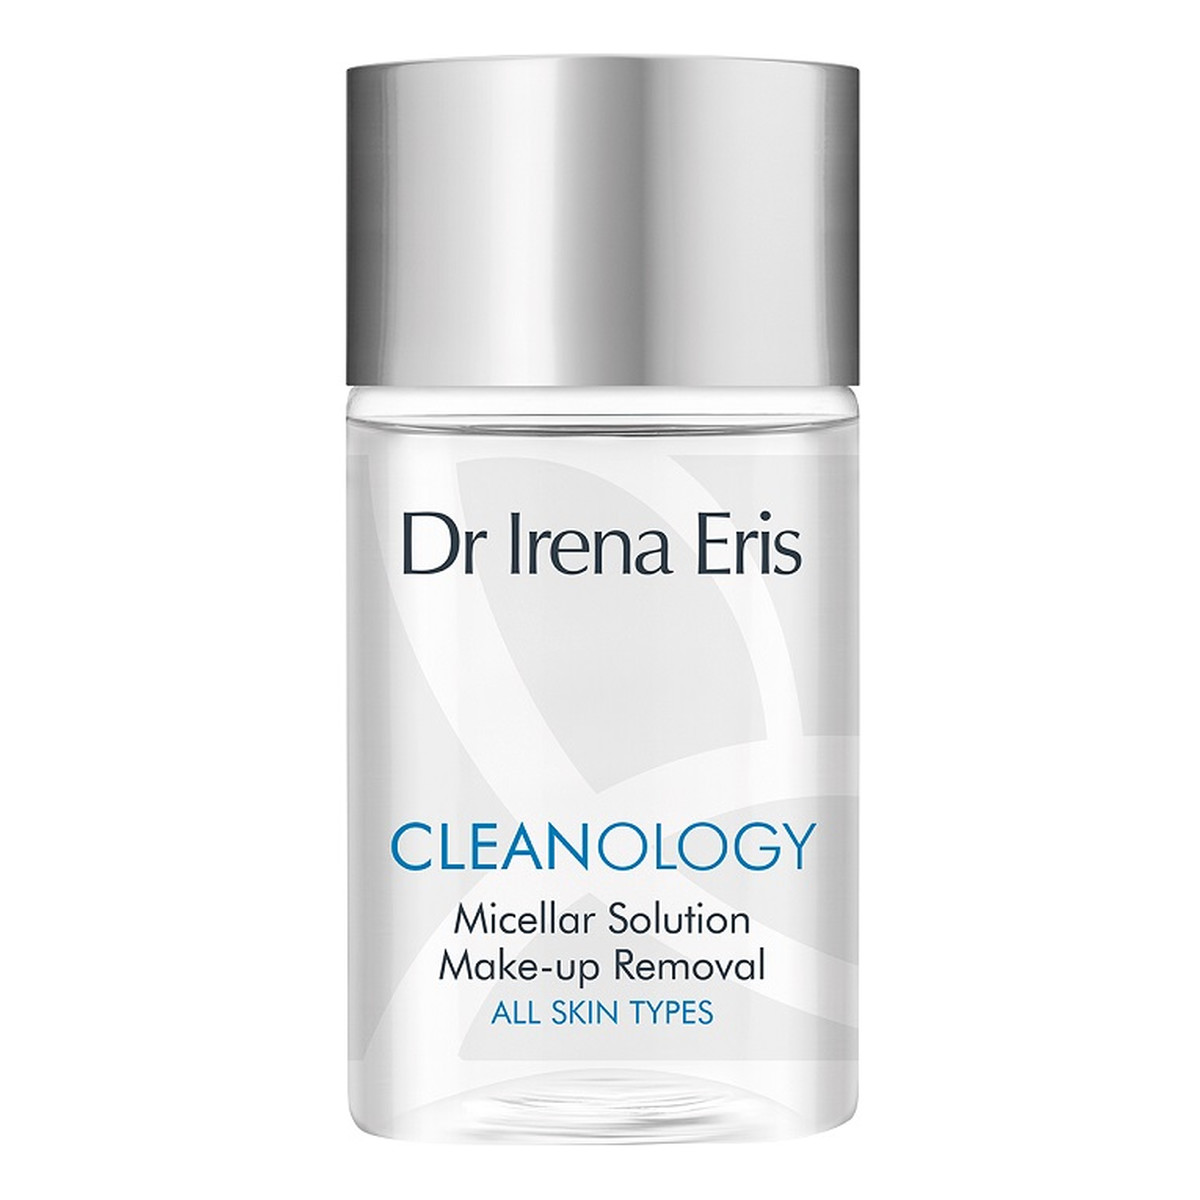 Dr Irena Eris Cleanology Micellar Solution Make-up Removal płyn micelarny do demakijażu twarzy i oczu do każdego typu cery 50ml